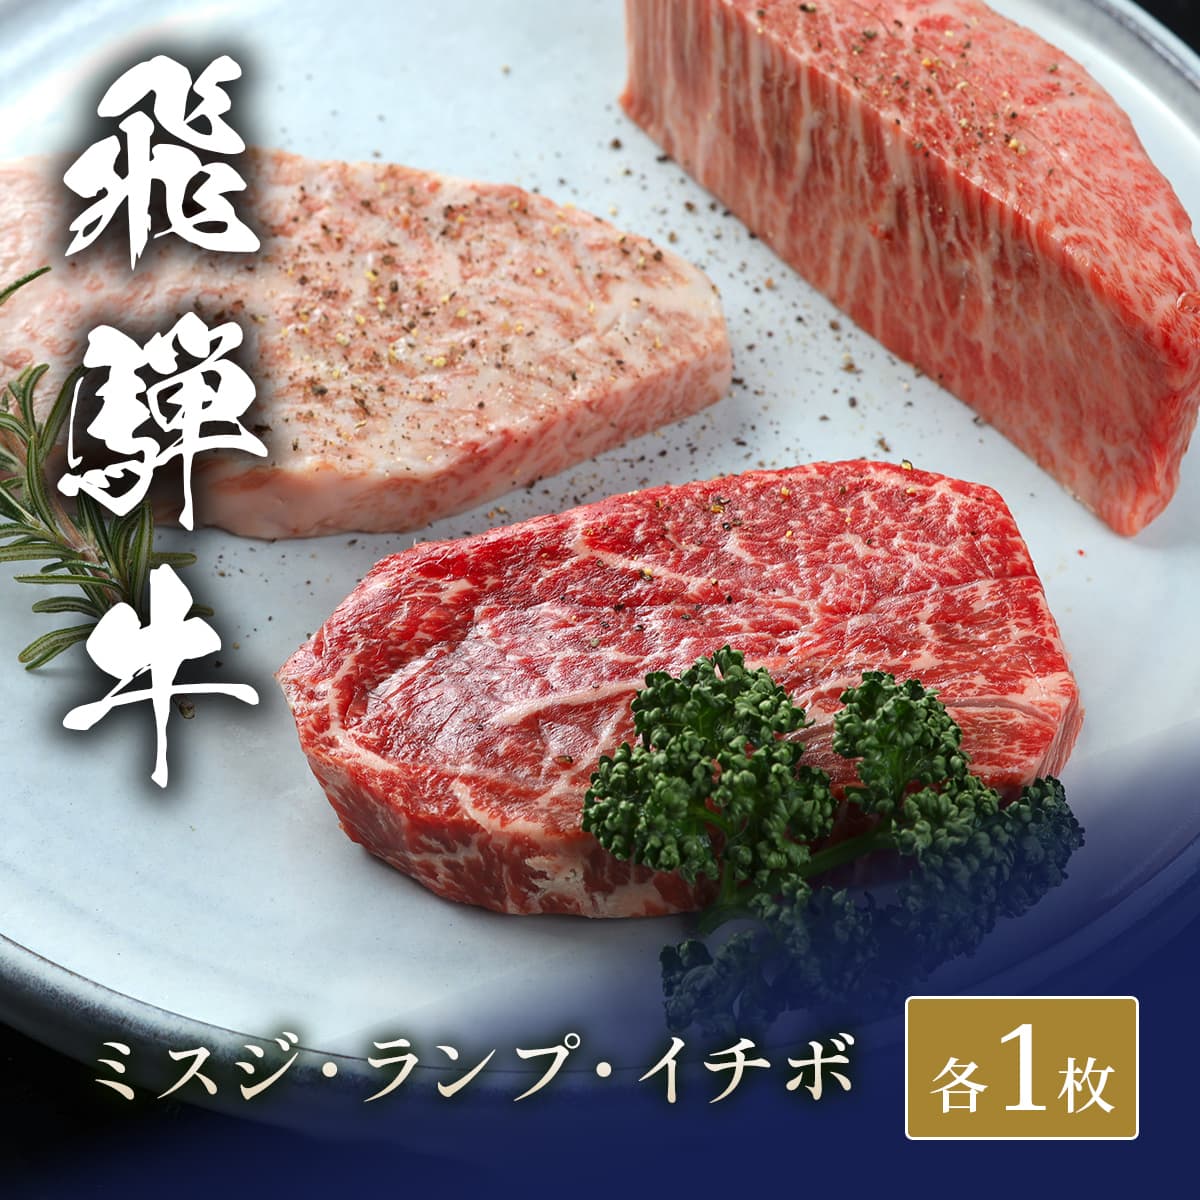 飛騨牛 ステーキ3種食べ比べ イチボ&ランプ&ミスジ x 各1枚